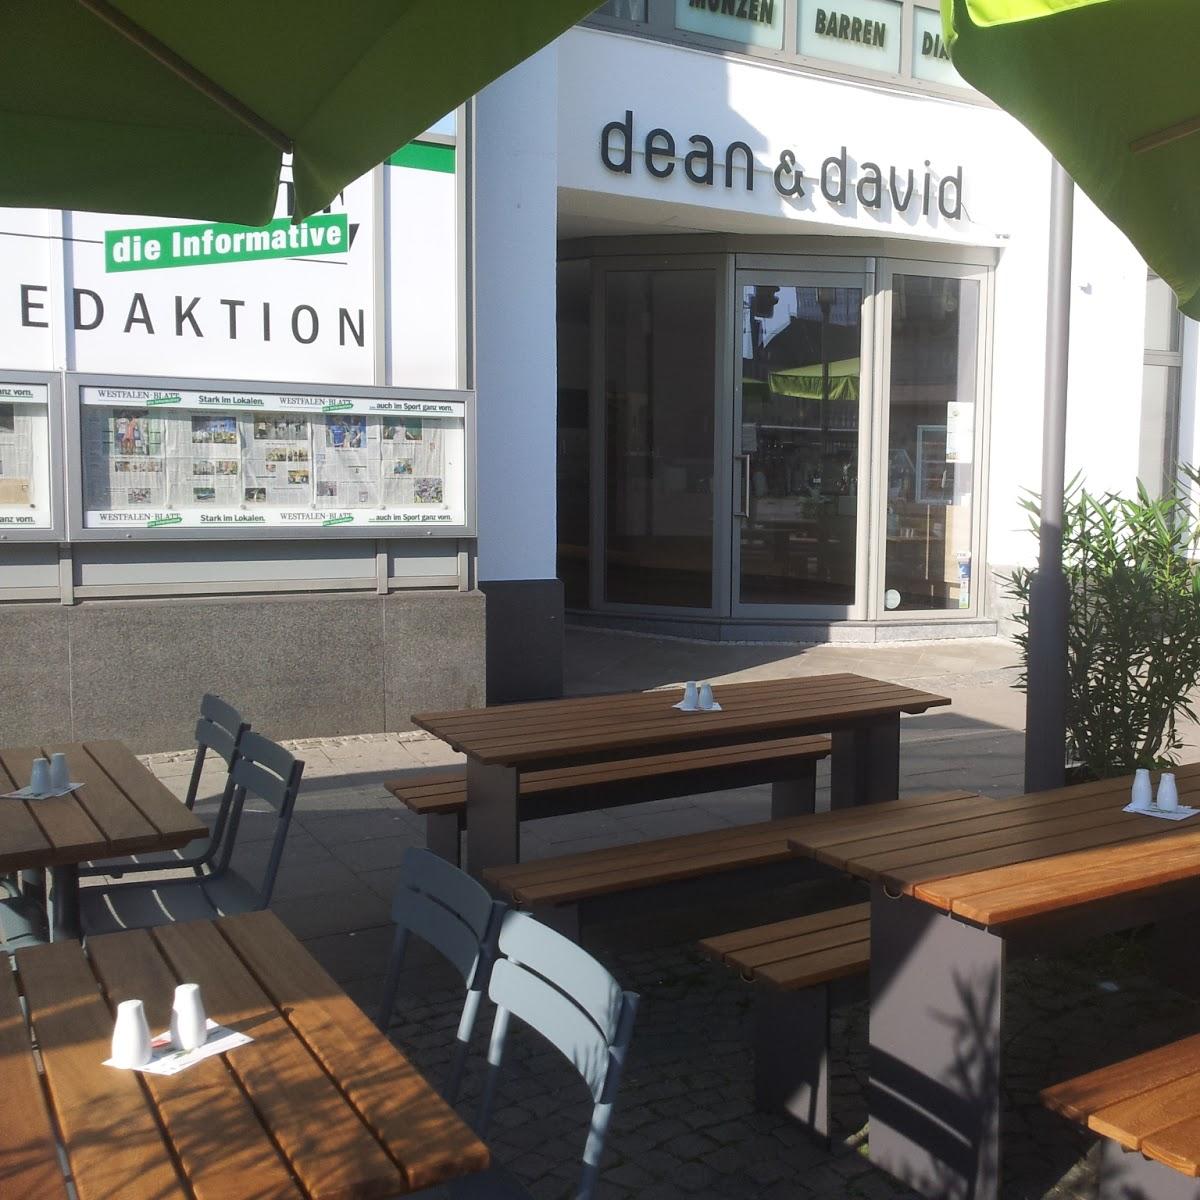 Restaurant "dean&david" in Bielefeld